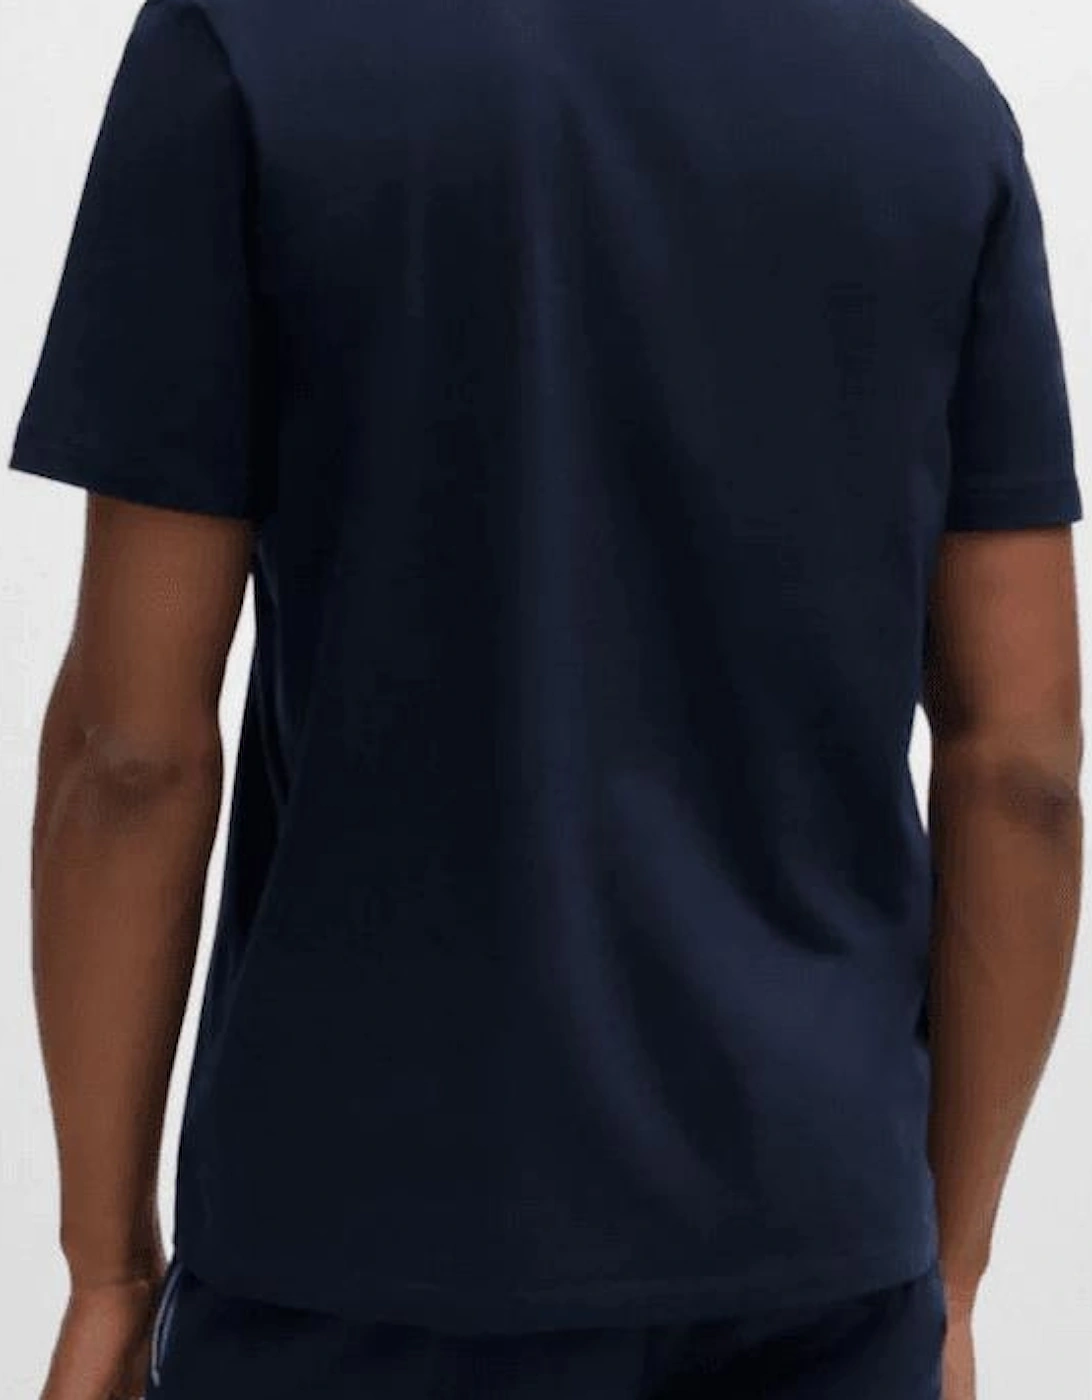 Cotton Embroidered Logo Dark Blue T-Shirt